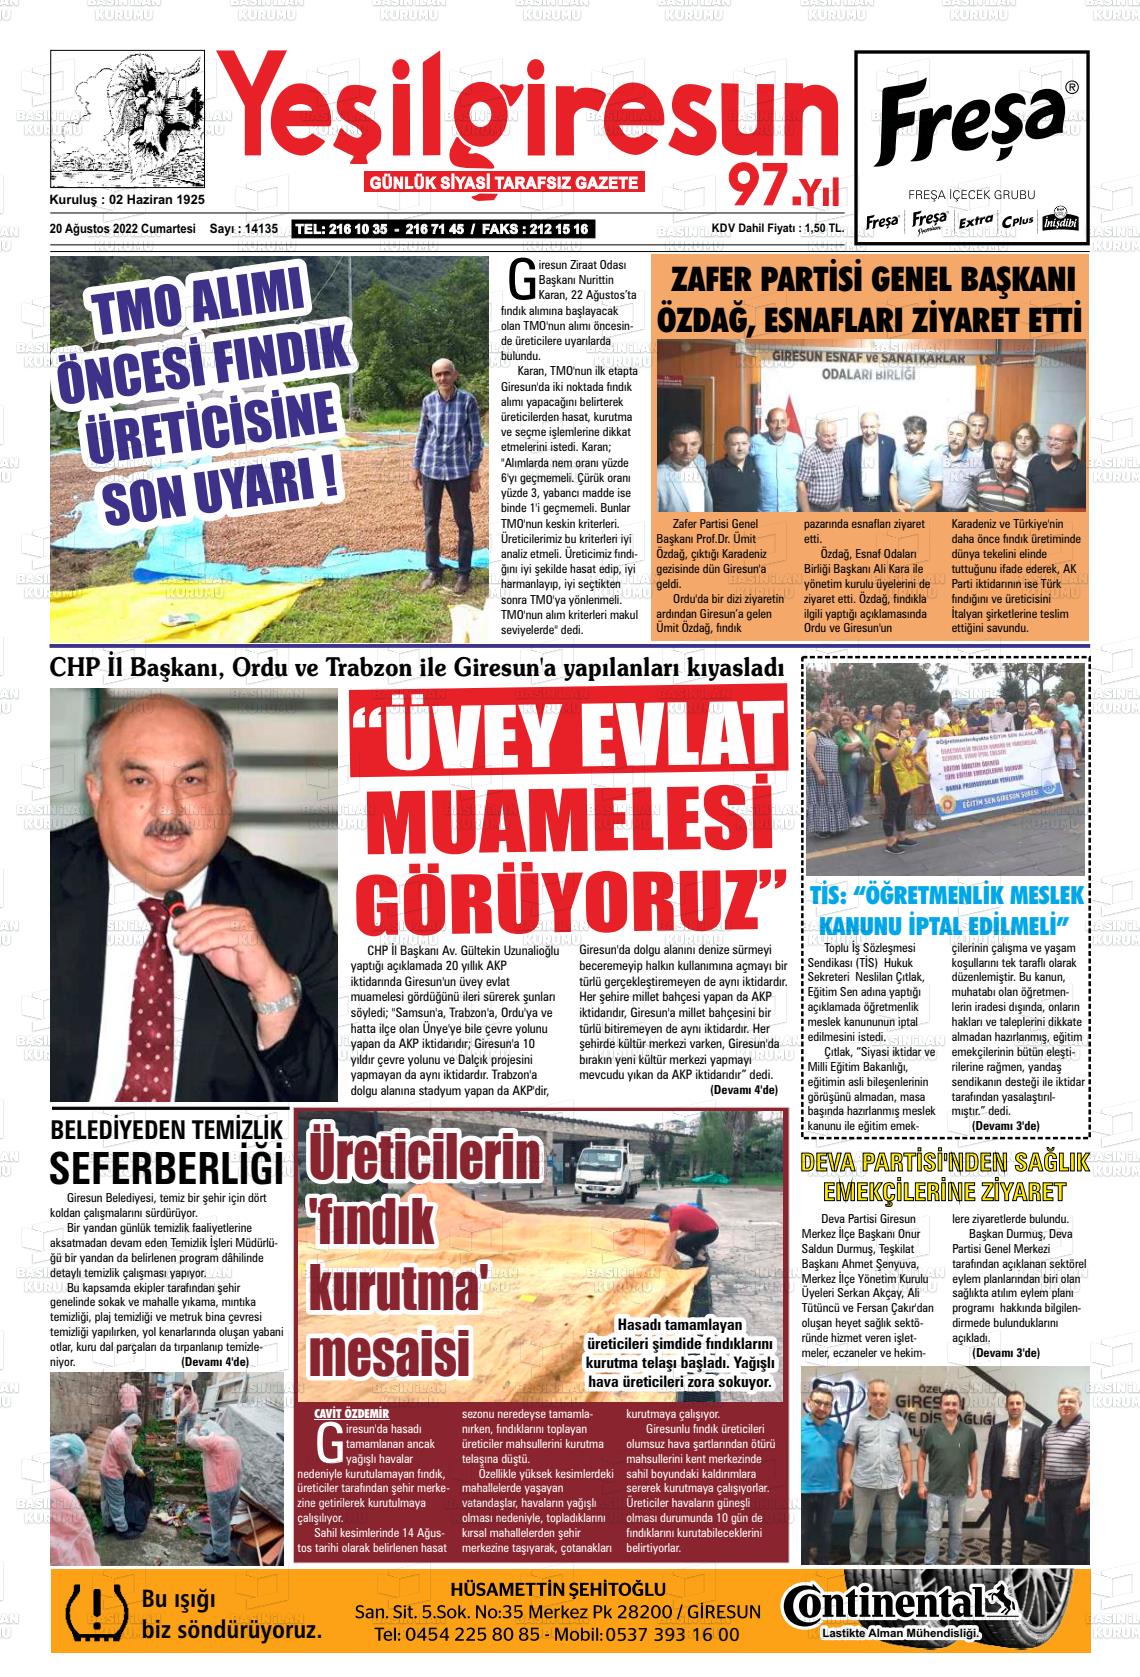 20 Ağustos 2022 Yeşil Giresun Gazete Manşeti